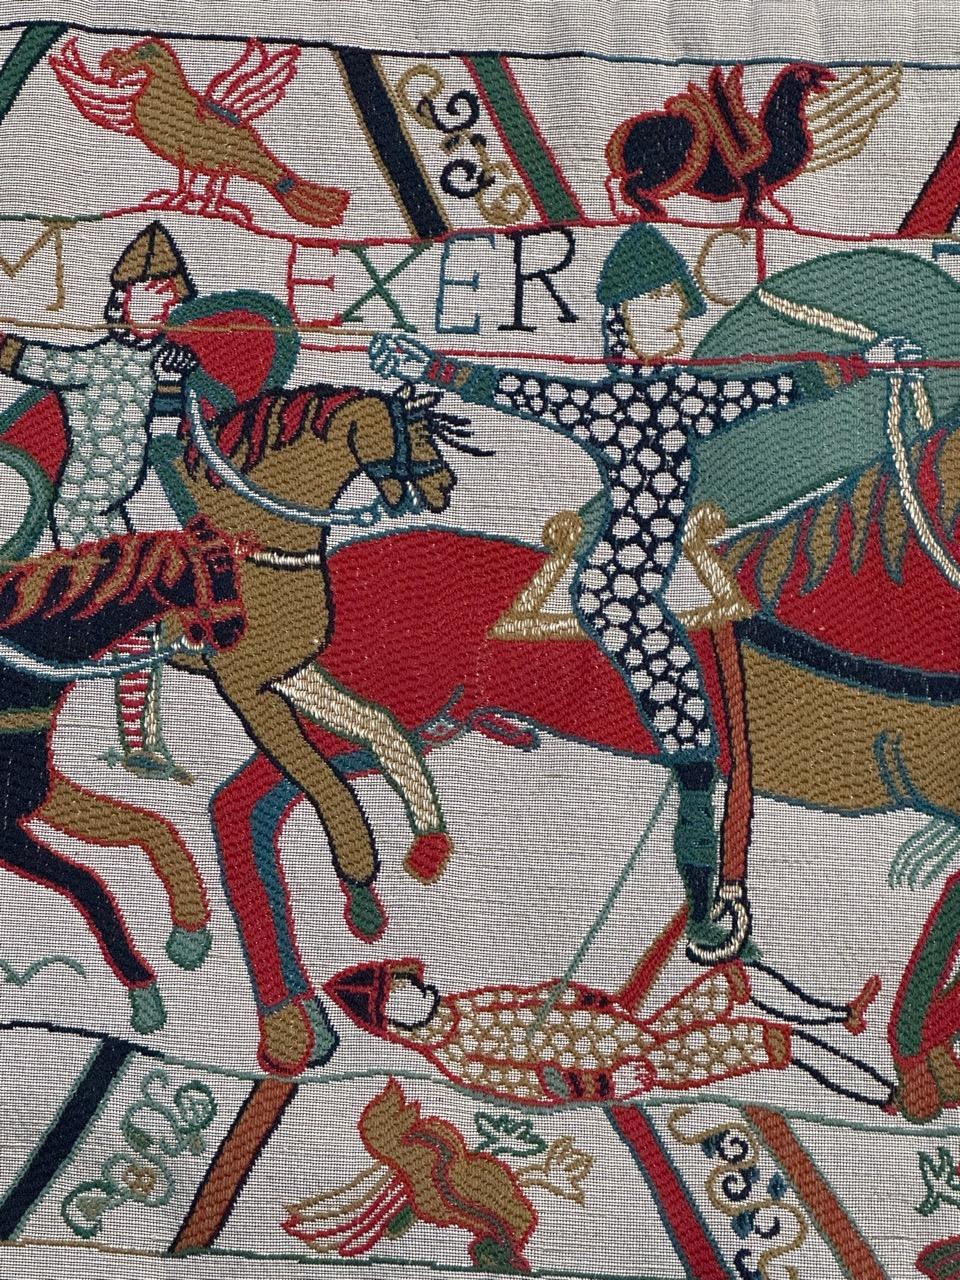 Découvrez le charme de notre exquise tapisserie française vintage présentant une section de la tapisserie de Bayeux. Fabriqué par Les Tissages La Filandière à Fresnoy-le-Grand, ce chef-d'œuvre a été tissé selon la technique du métier à tisser